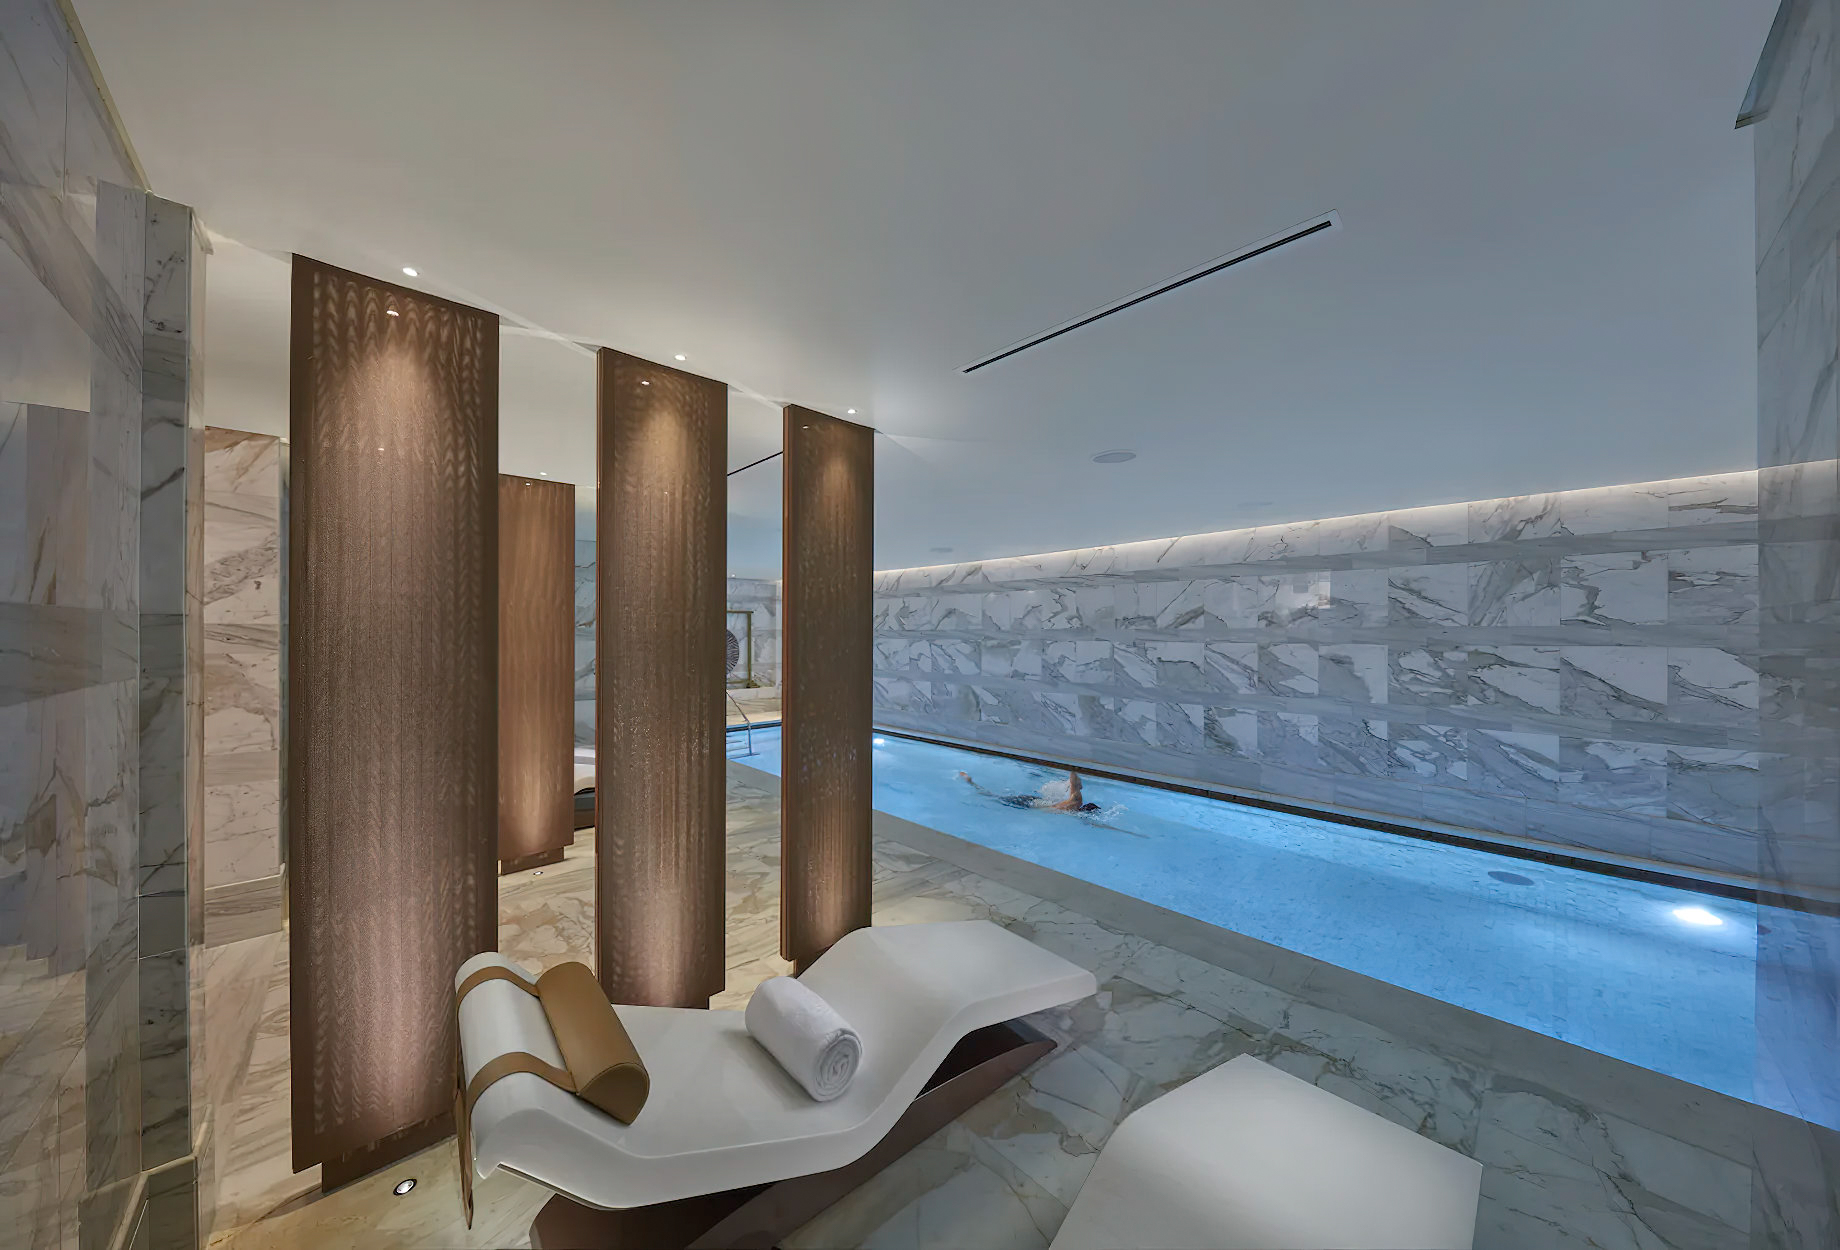 Mandarin Oriental, Doha Hotel - Doha, Qatar - Spa Pool